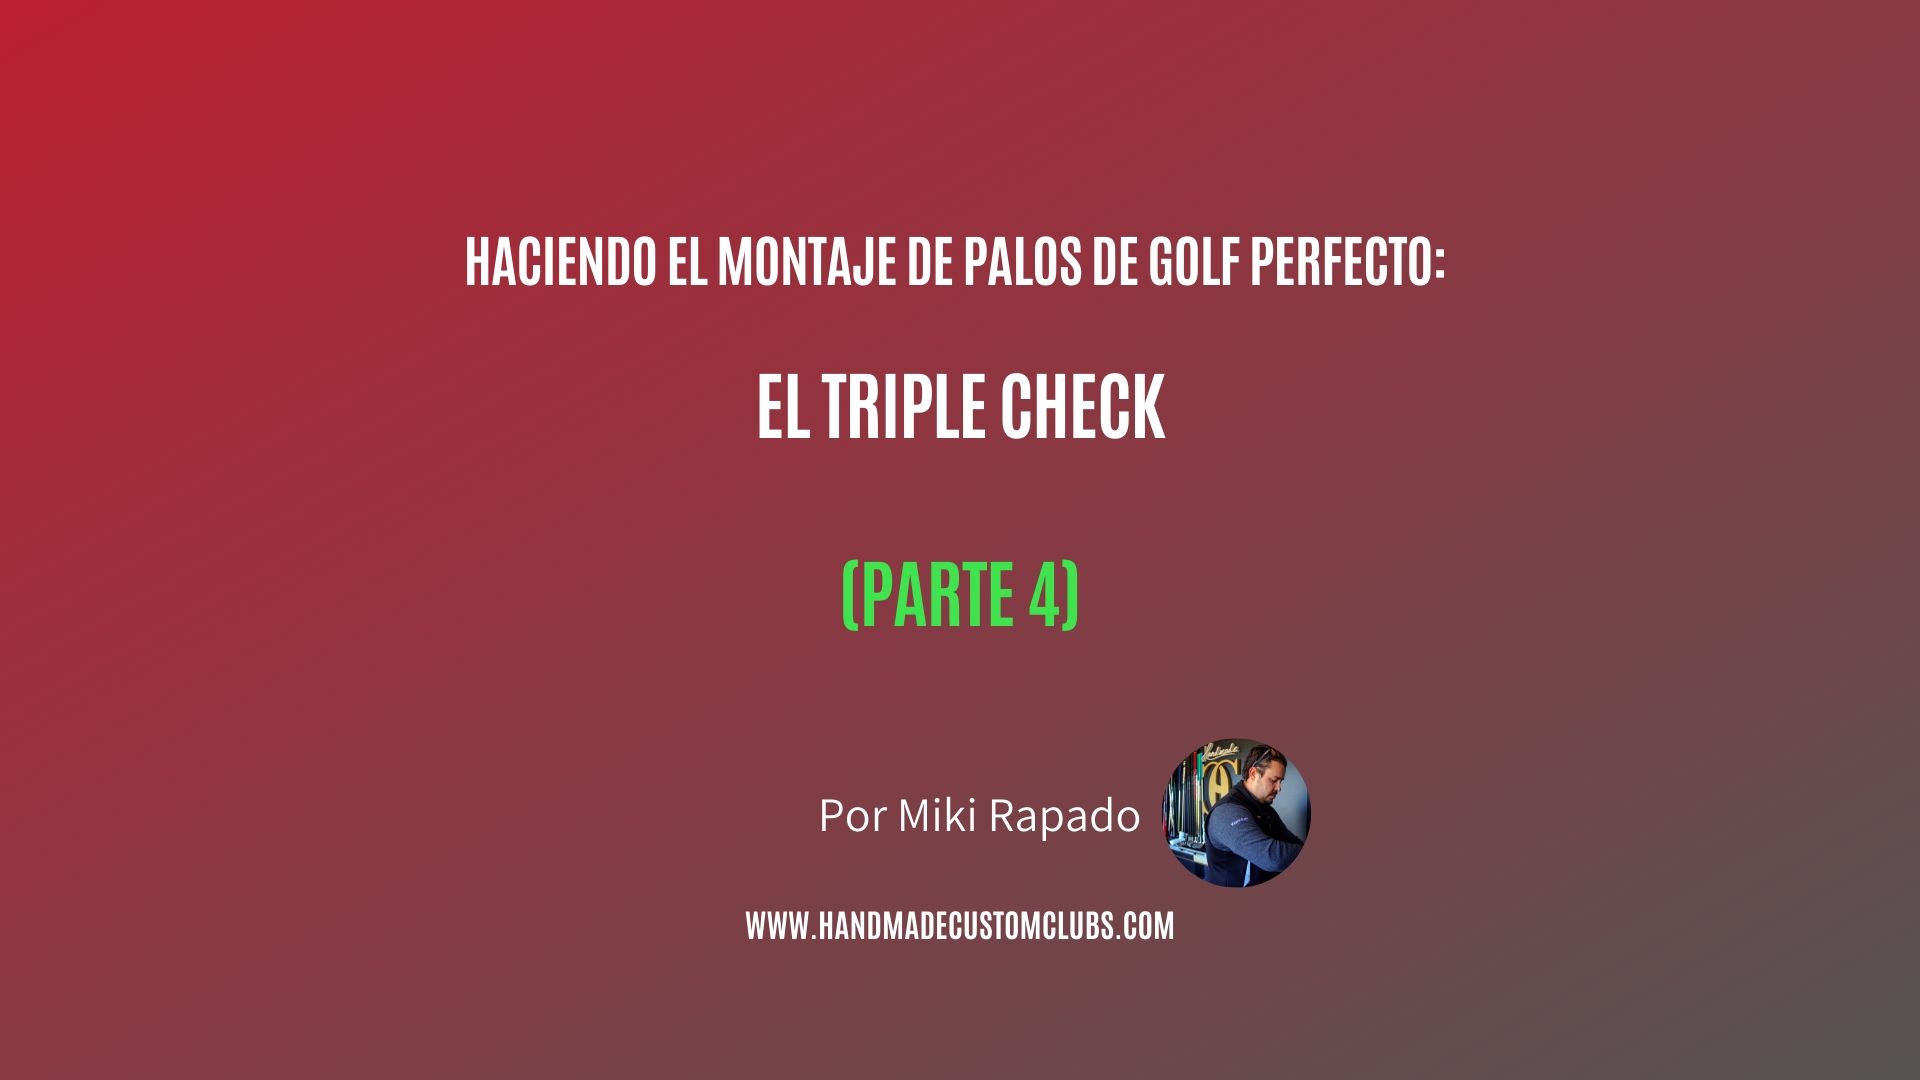 HACIENDO EL MONTAJE DE PALOS DE GOLF PERFECTO: EL TRIPLE CHECK